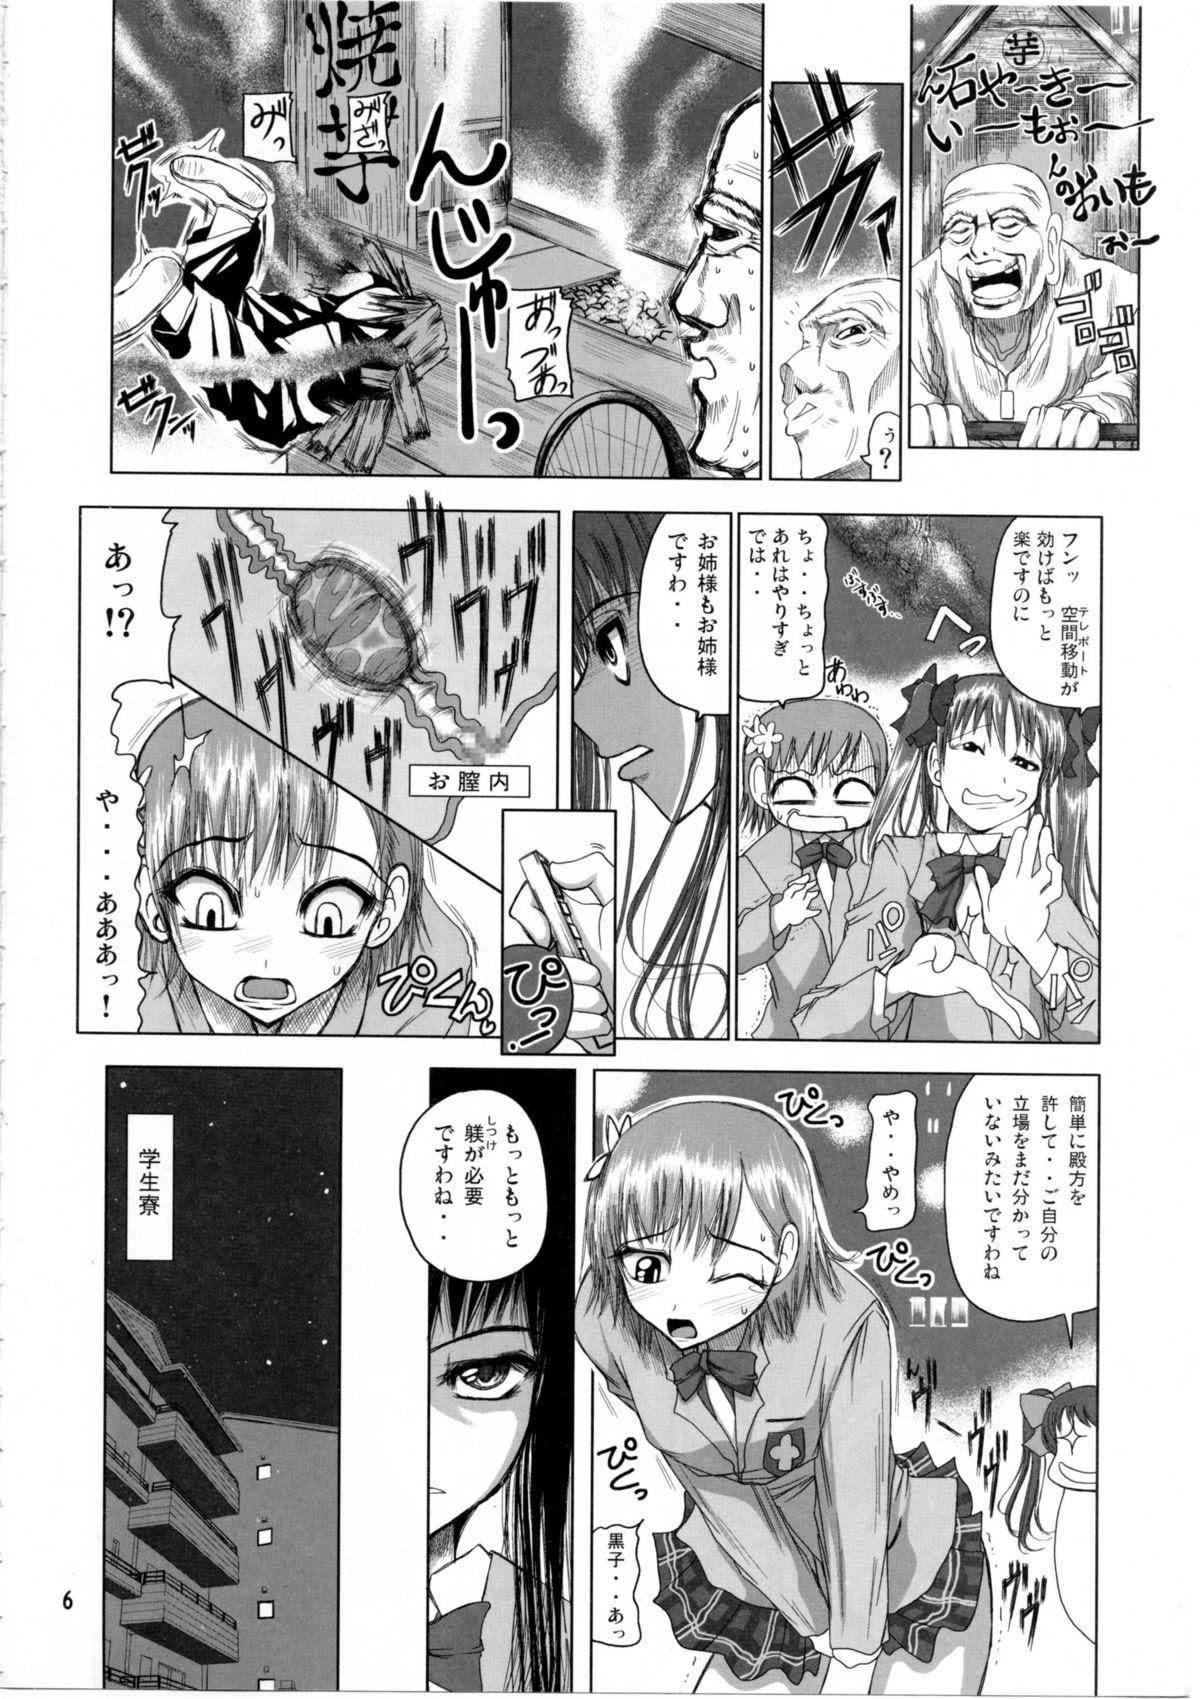 Strange Shirai Kuroko Sensei no Spooky tarte - Toaru kagaku no railgun Real bout high school Sharing - Page 5